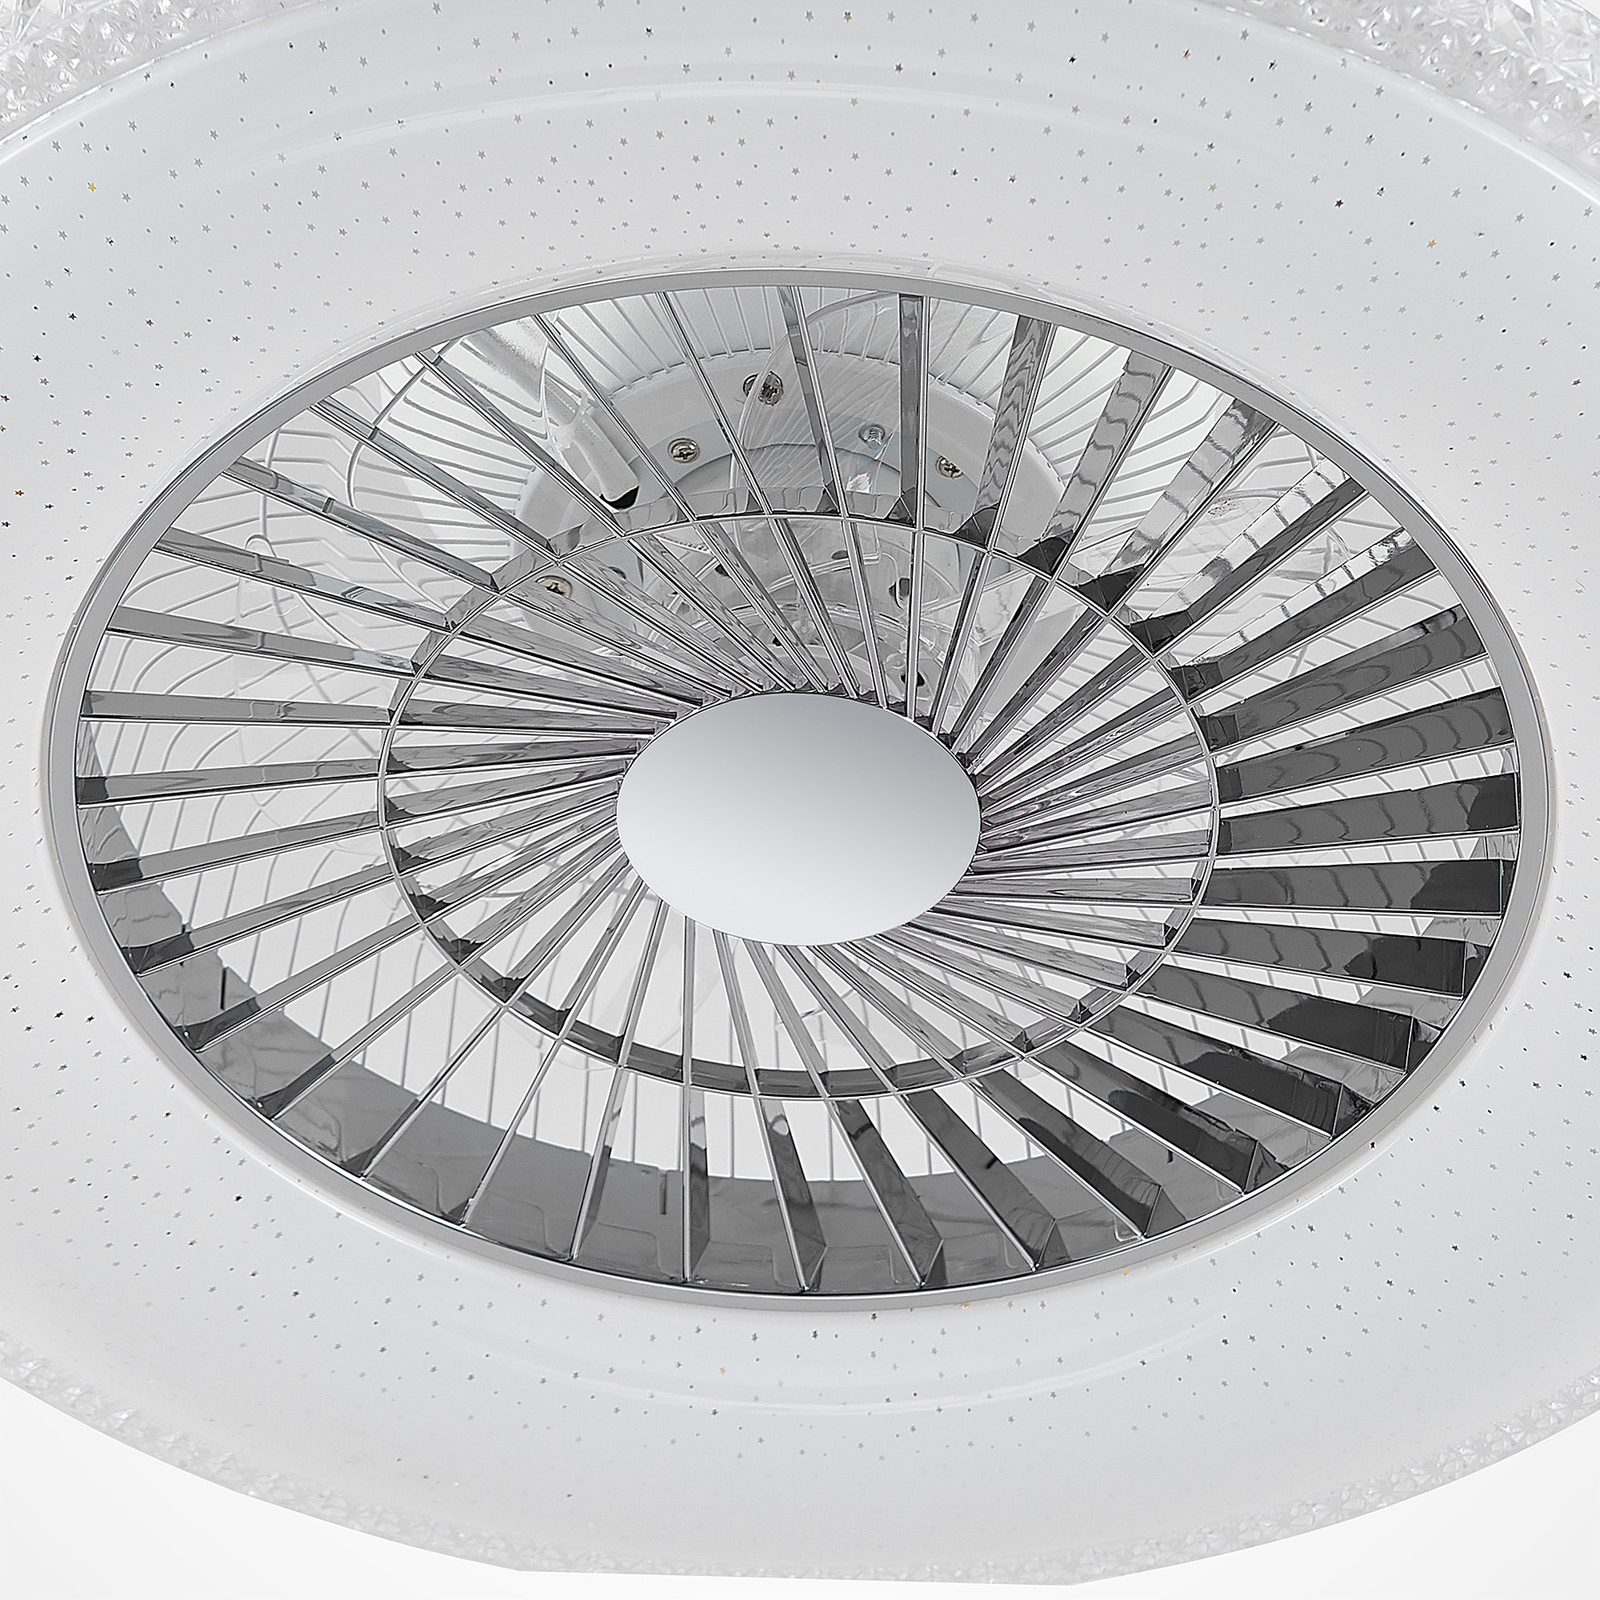 Starluna Ordanio ventilateur de plafond LED